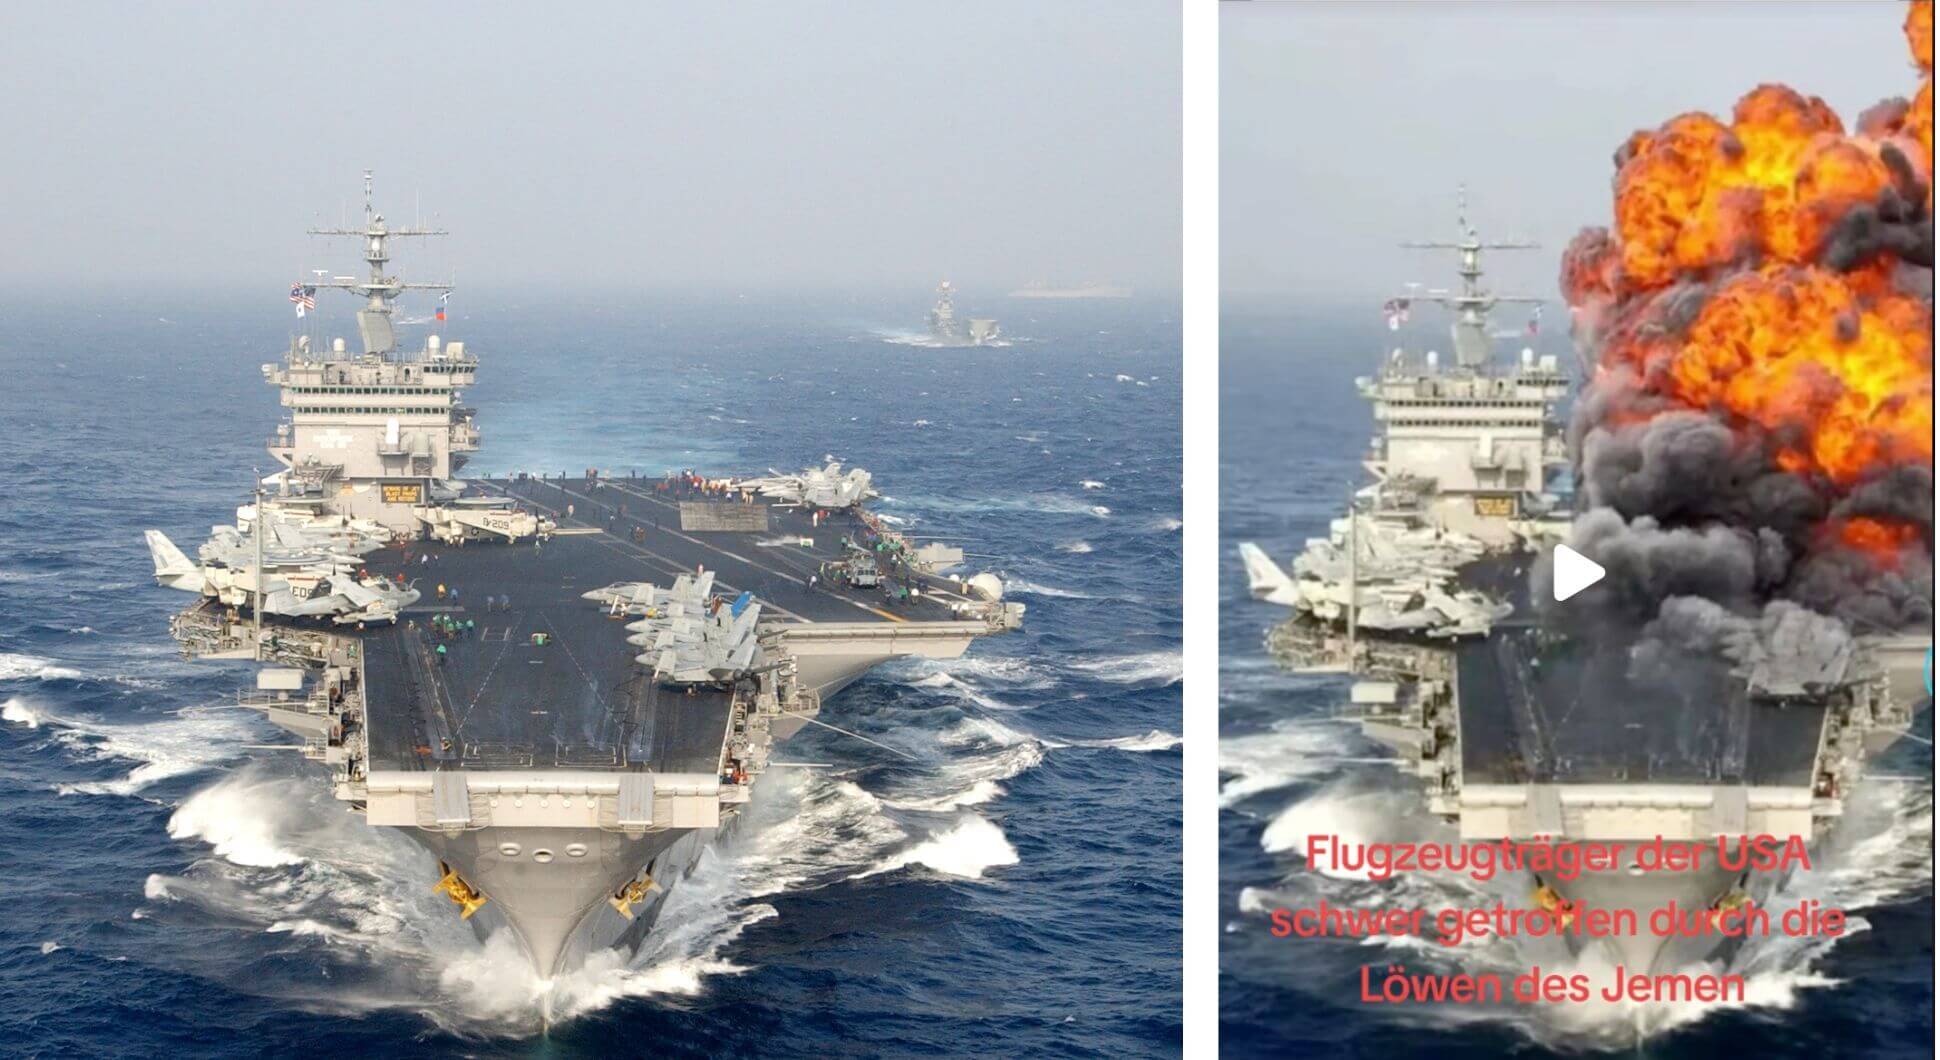 Links eine echte Aufnahme eines US-Flugzeugträgers – es ist aber nicht die USS Eisenhower. Daneben sieht man dasselbe Bild, aber mit einer Explosion an Bord.